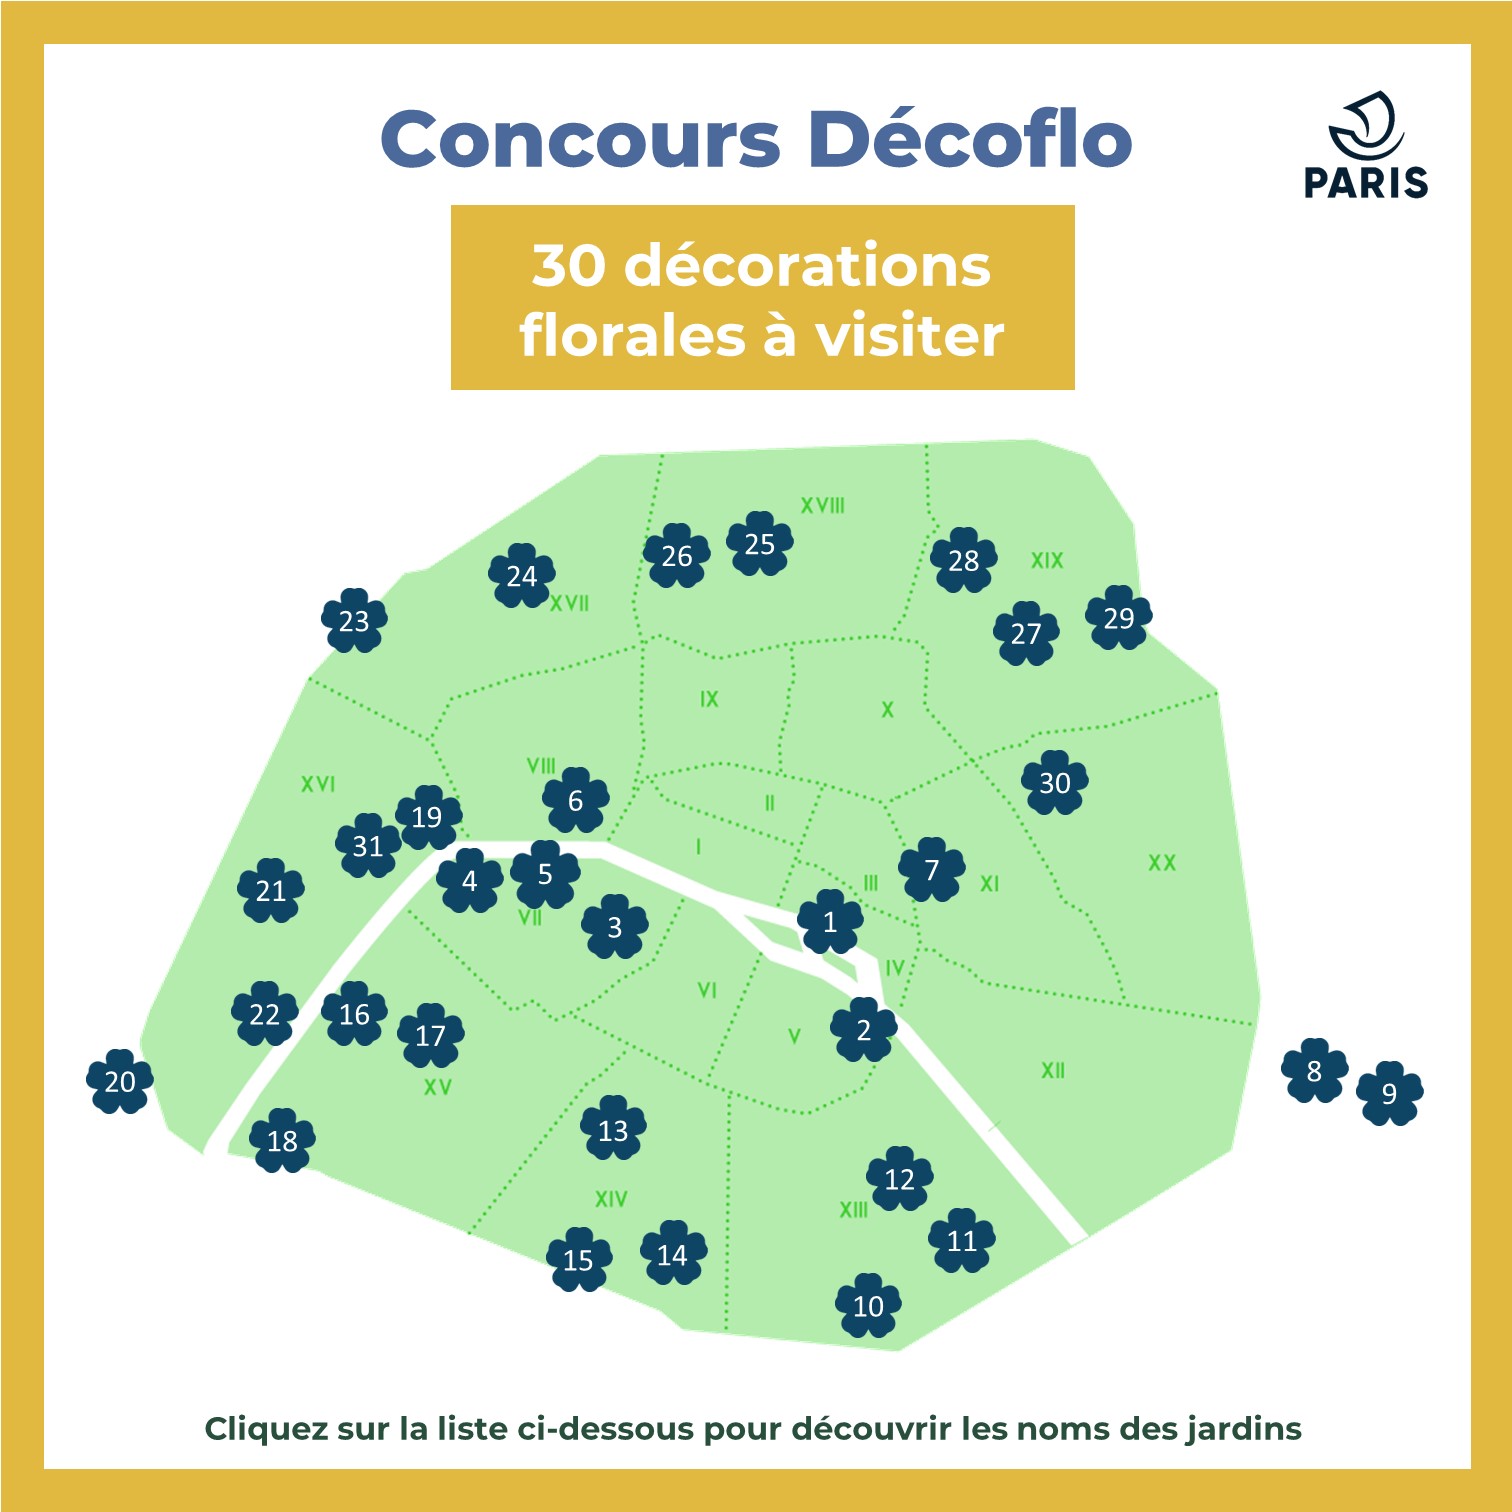 Une carte de Paris indiquant les localisations des jardins participant au concours Décoflo en 2023